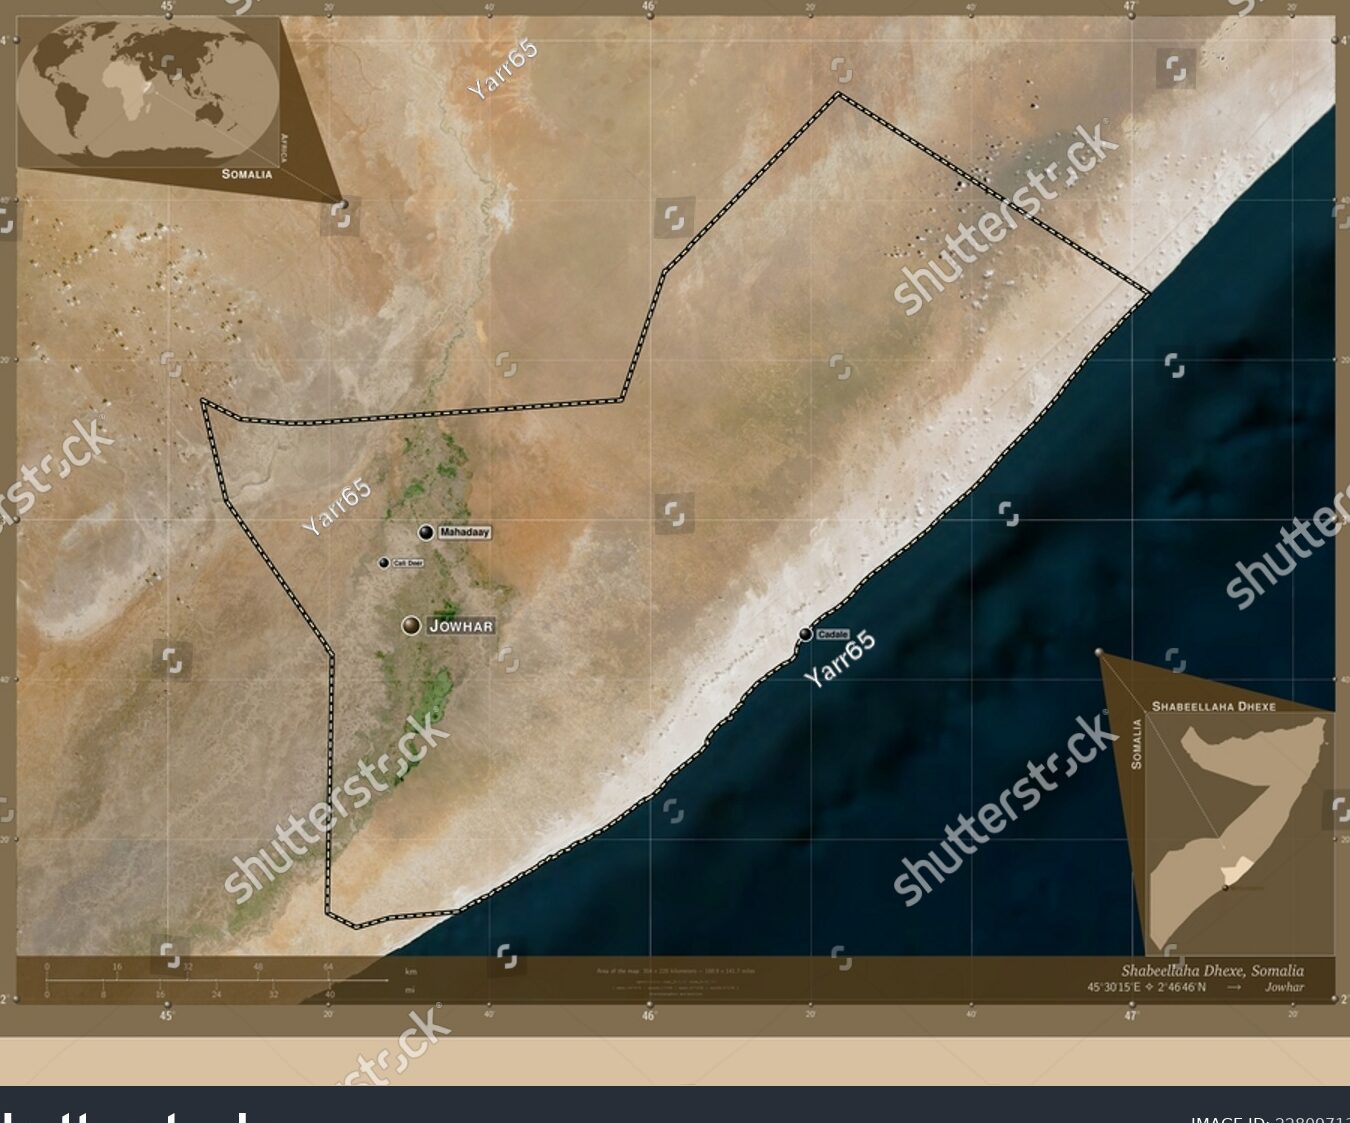 Ubicación geográfica de Somalia.